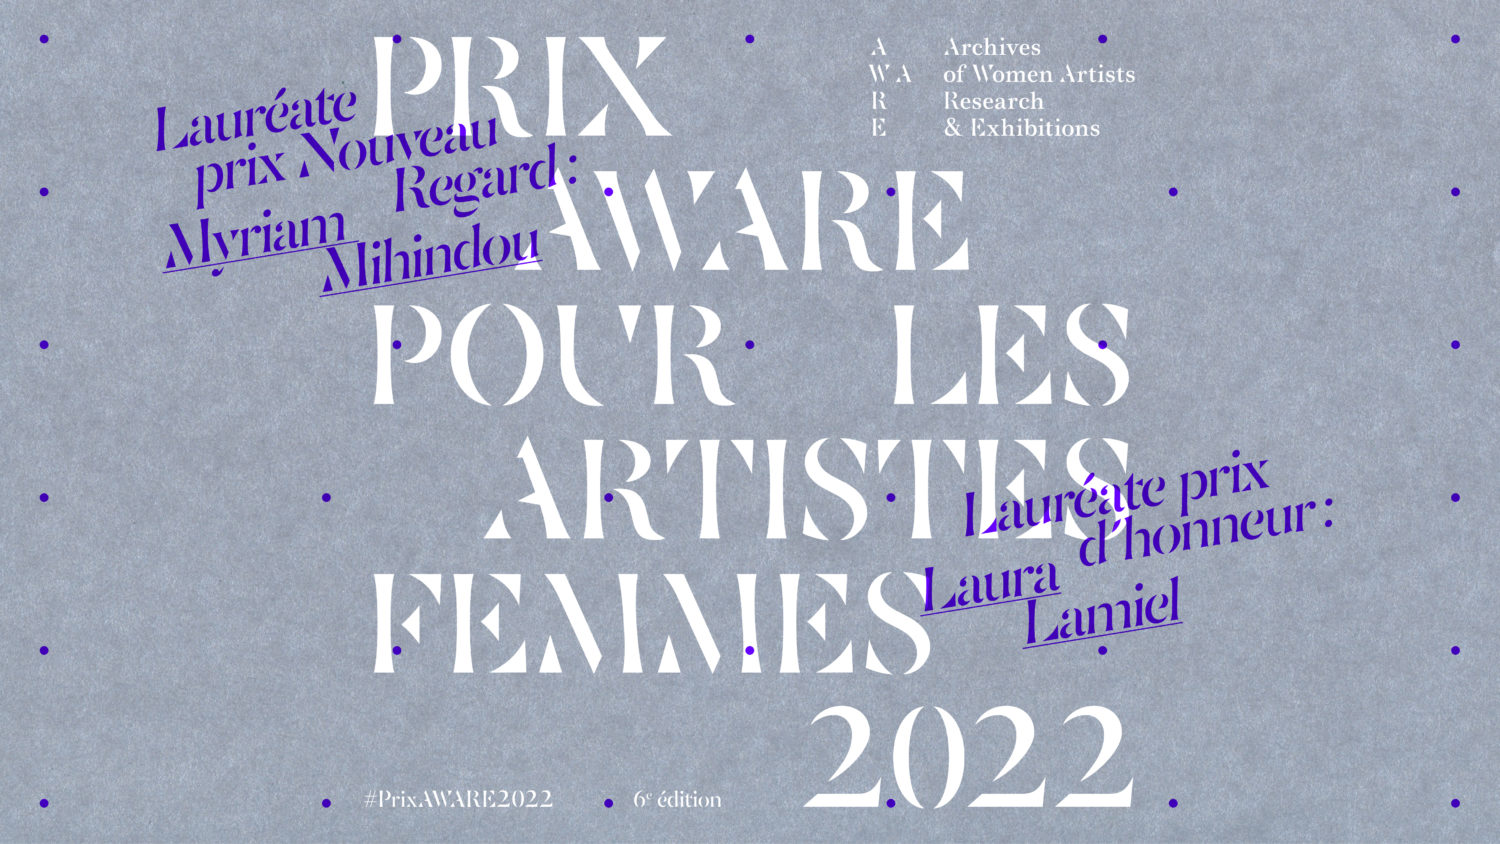 2022 - AWARE Artistes femmes / women artists